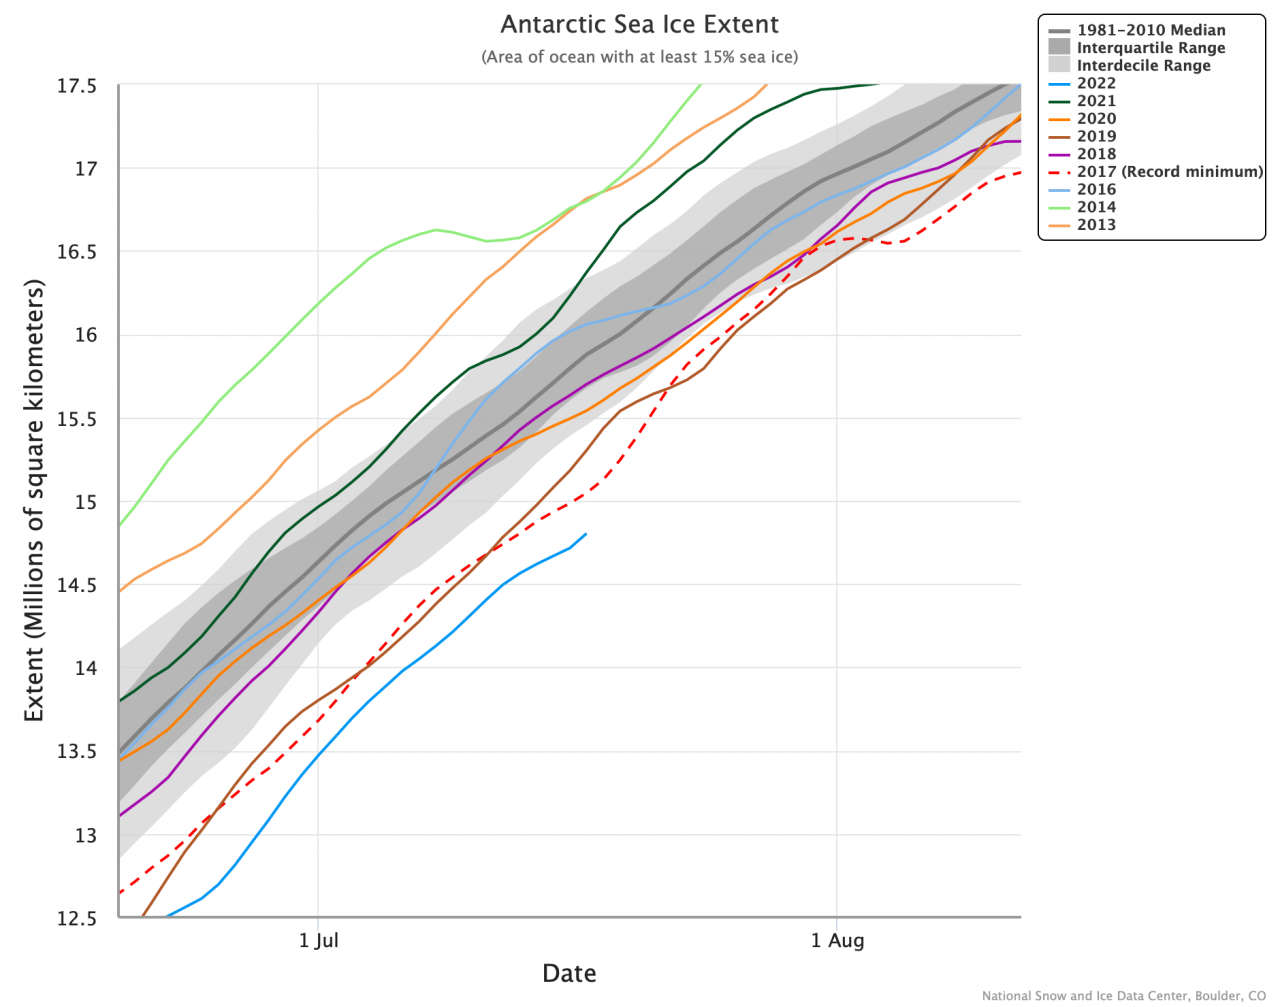 Situazione in Antartide rispetto la media e gli scorsi anni Credito: National Snow and Ice Data Center